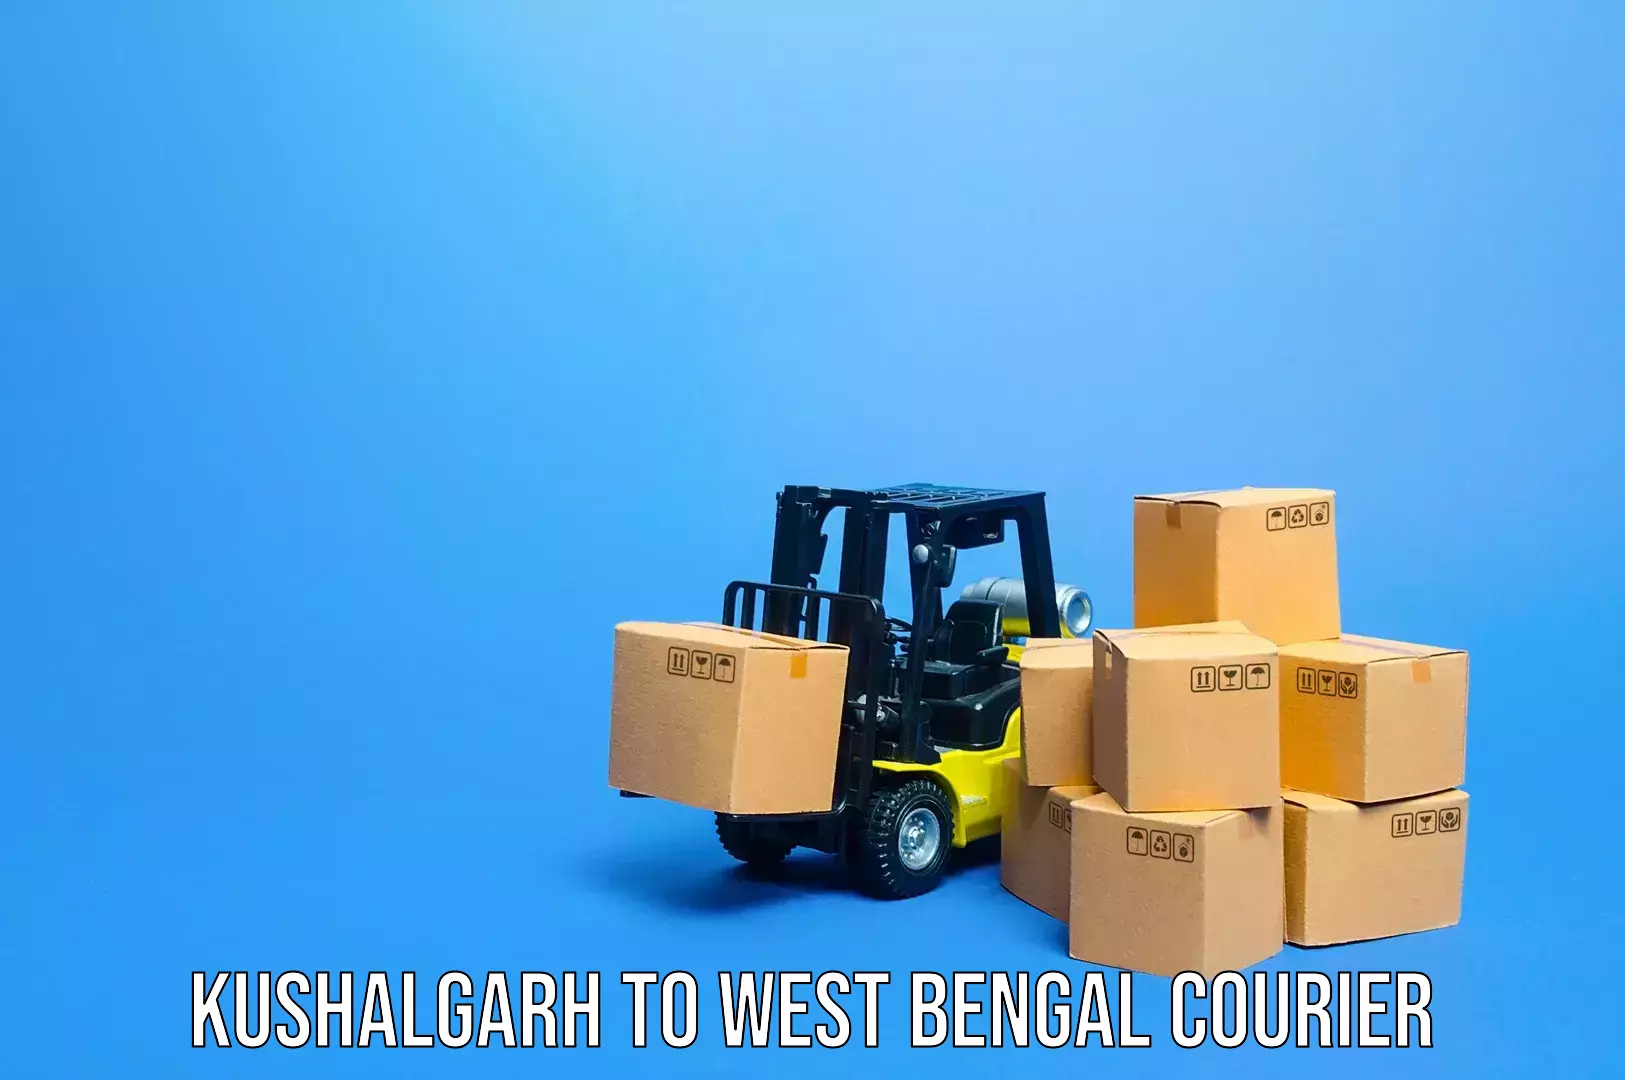 Baggage transport technology Kushalgarh to West Bengal